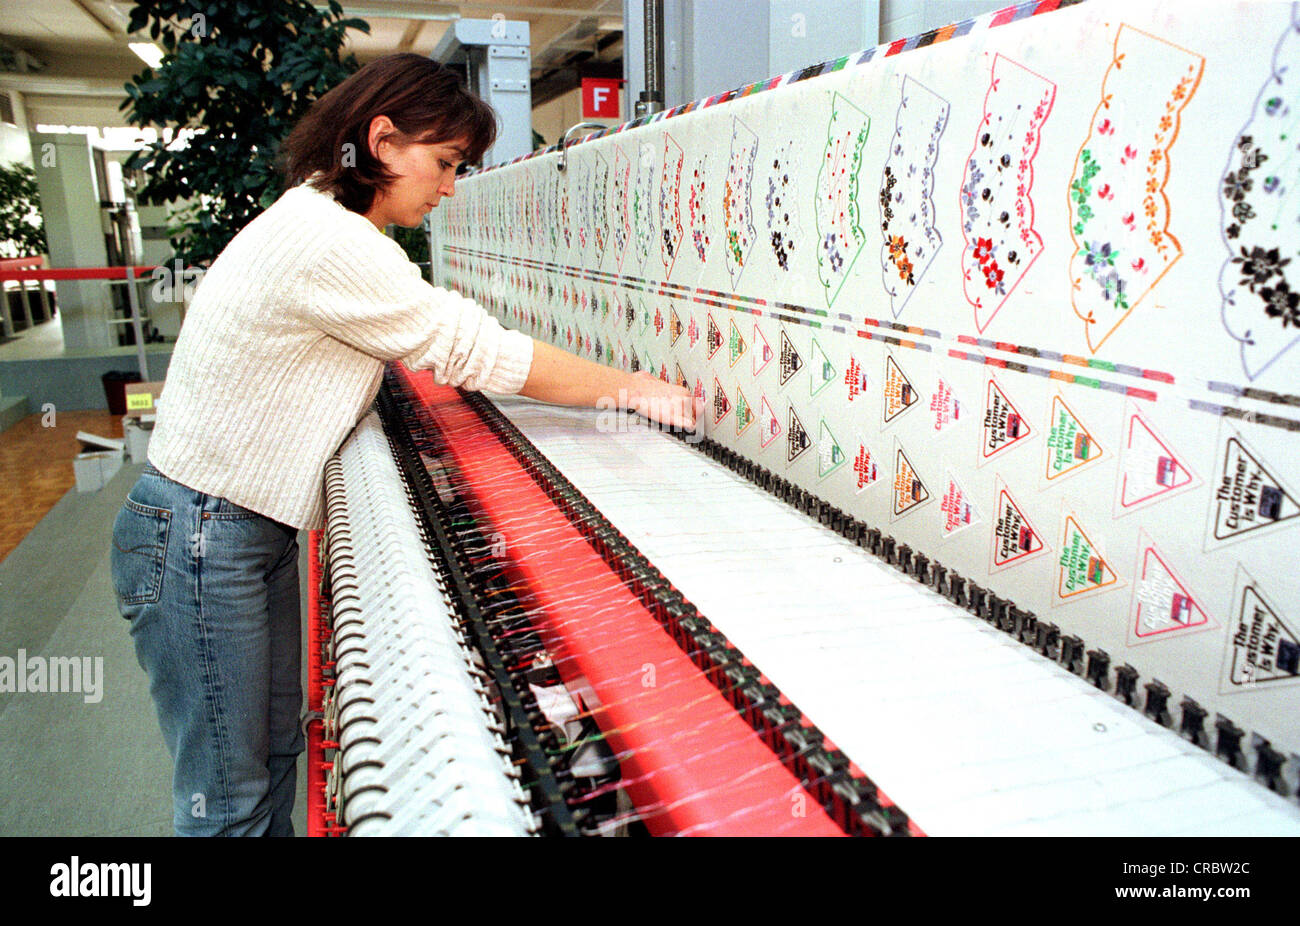 Frau auf eine Stickerei Maschinenfabrik Saurer Arbon, Schweiz  Stockfotografie - Alamy